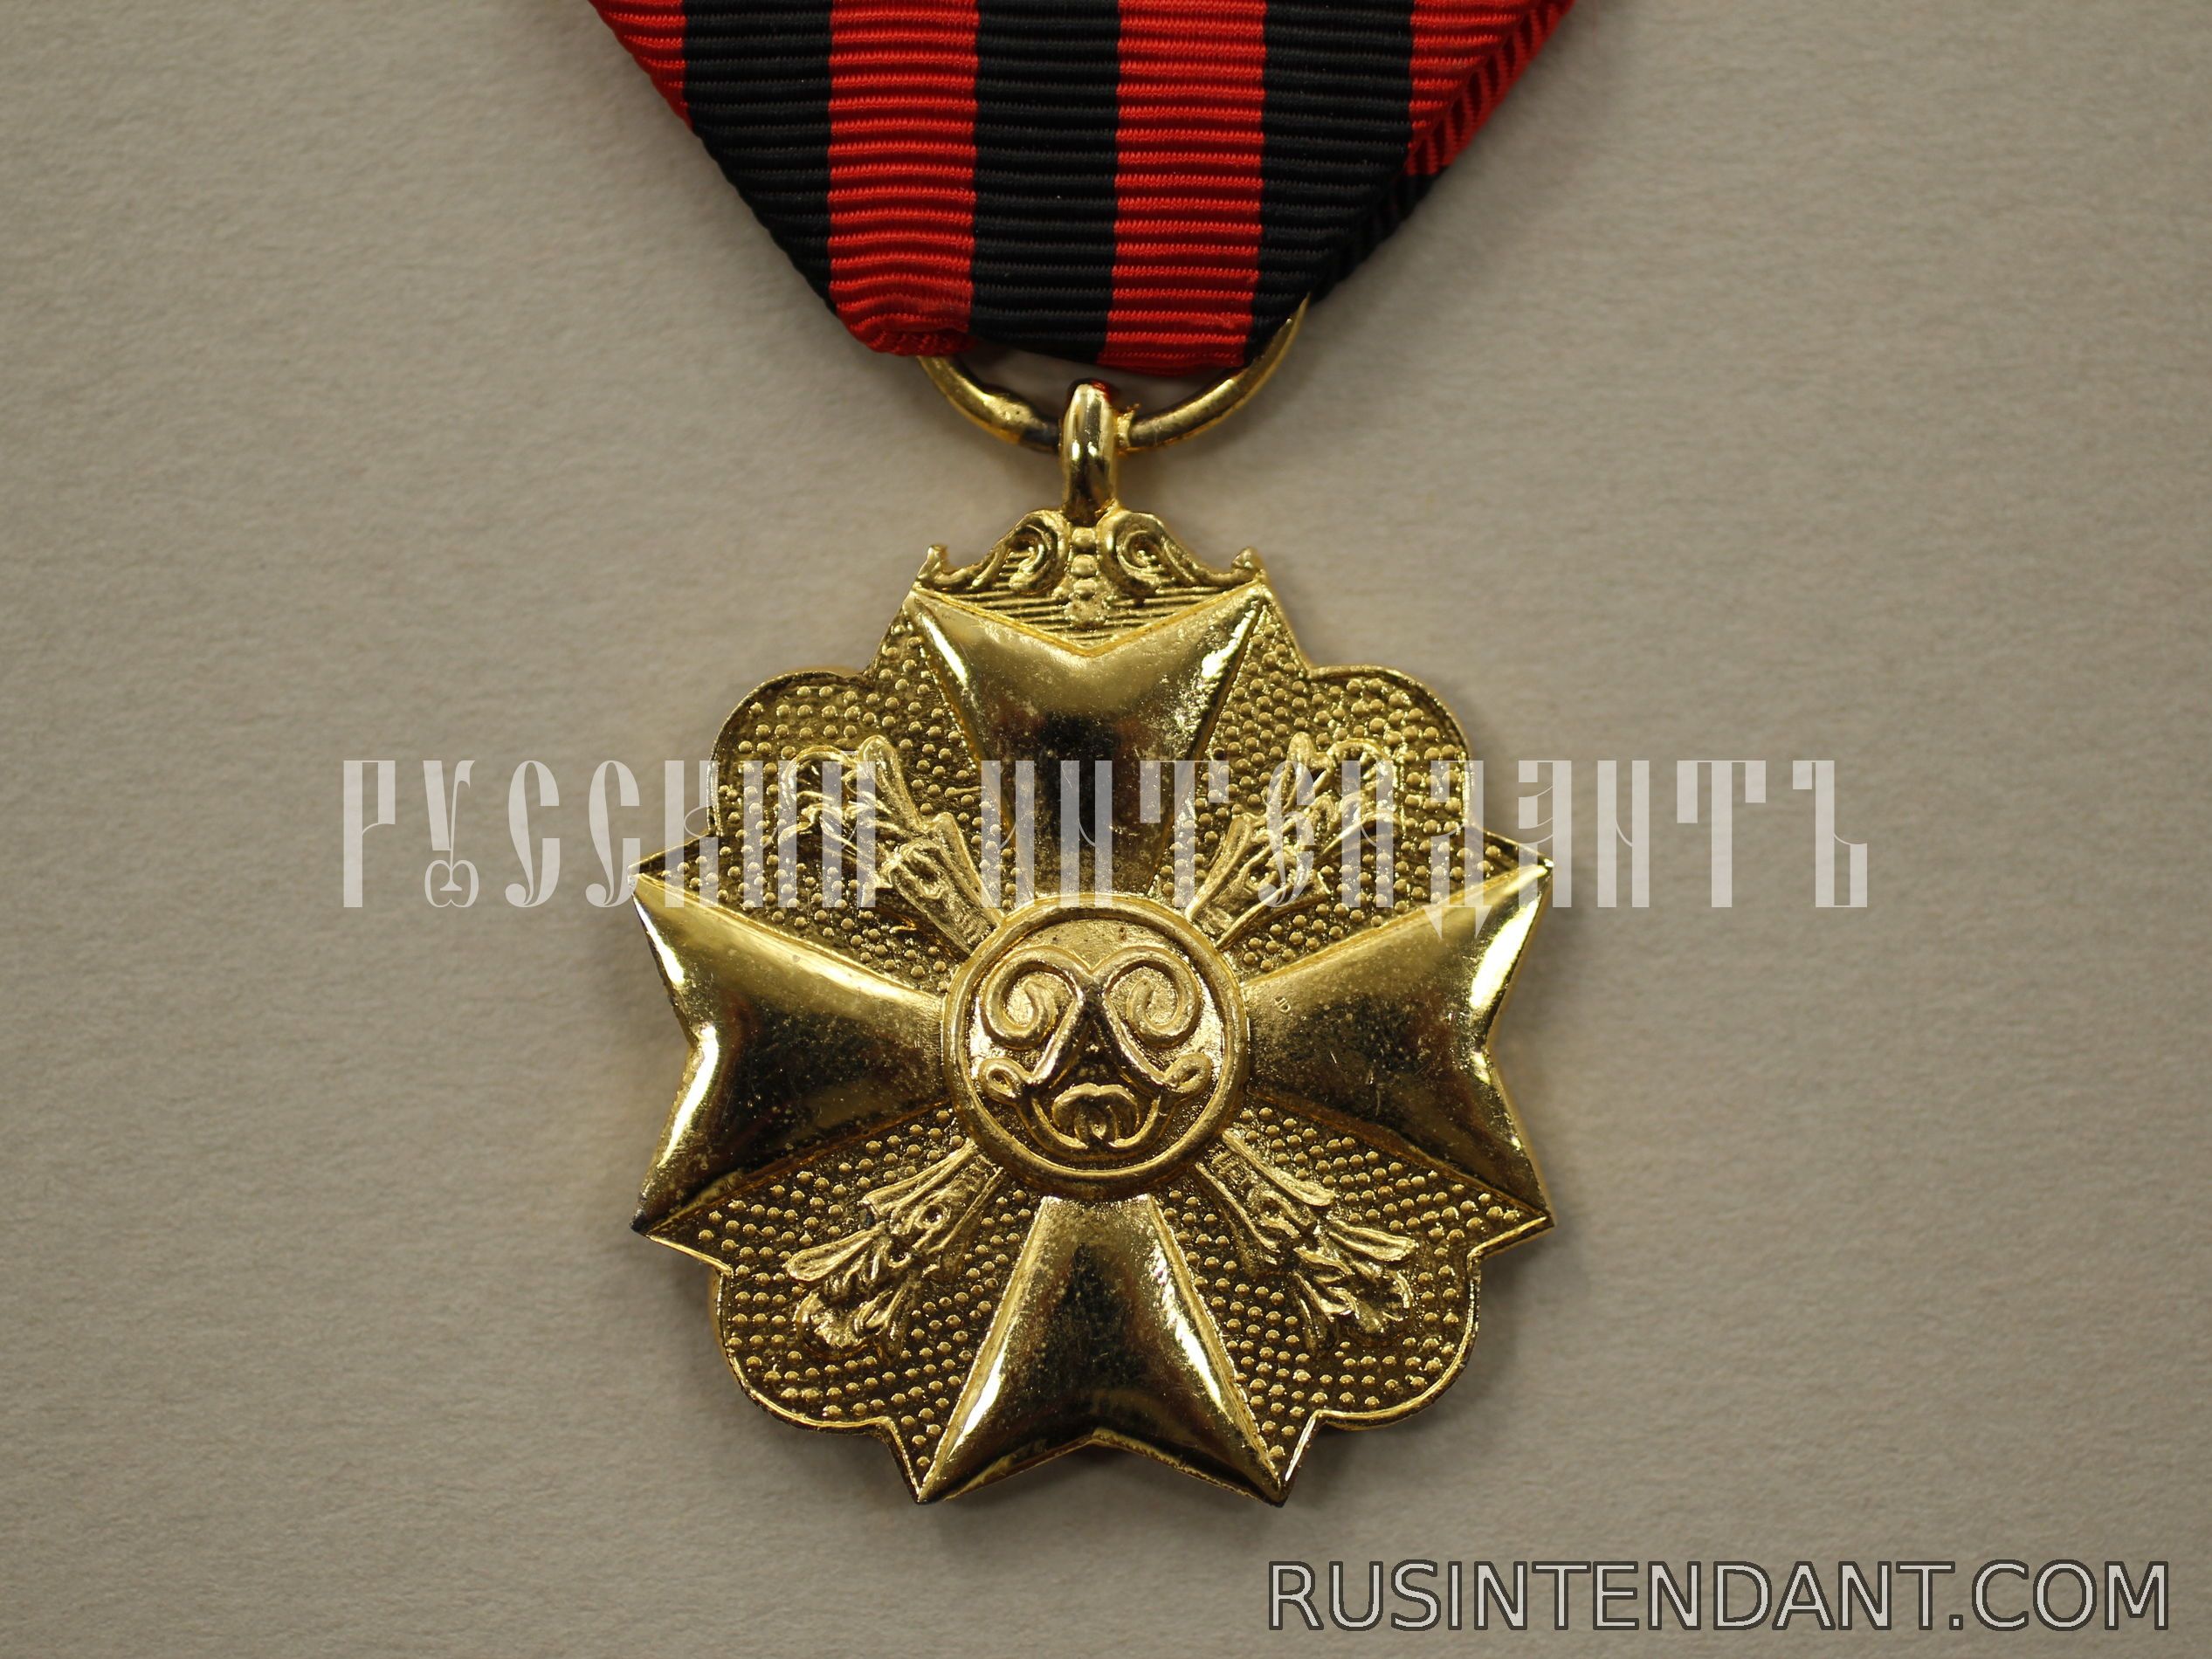 Фото 1: Золотая медаль Гражданского знака отличия 